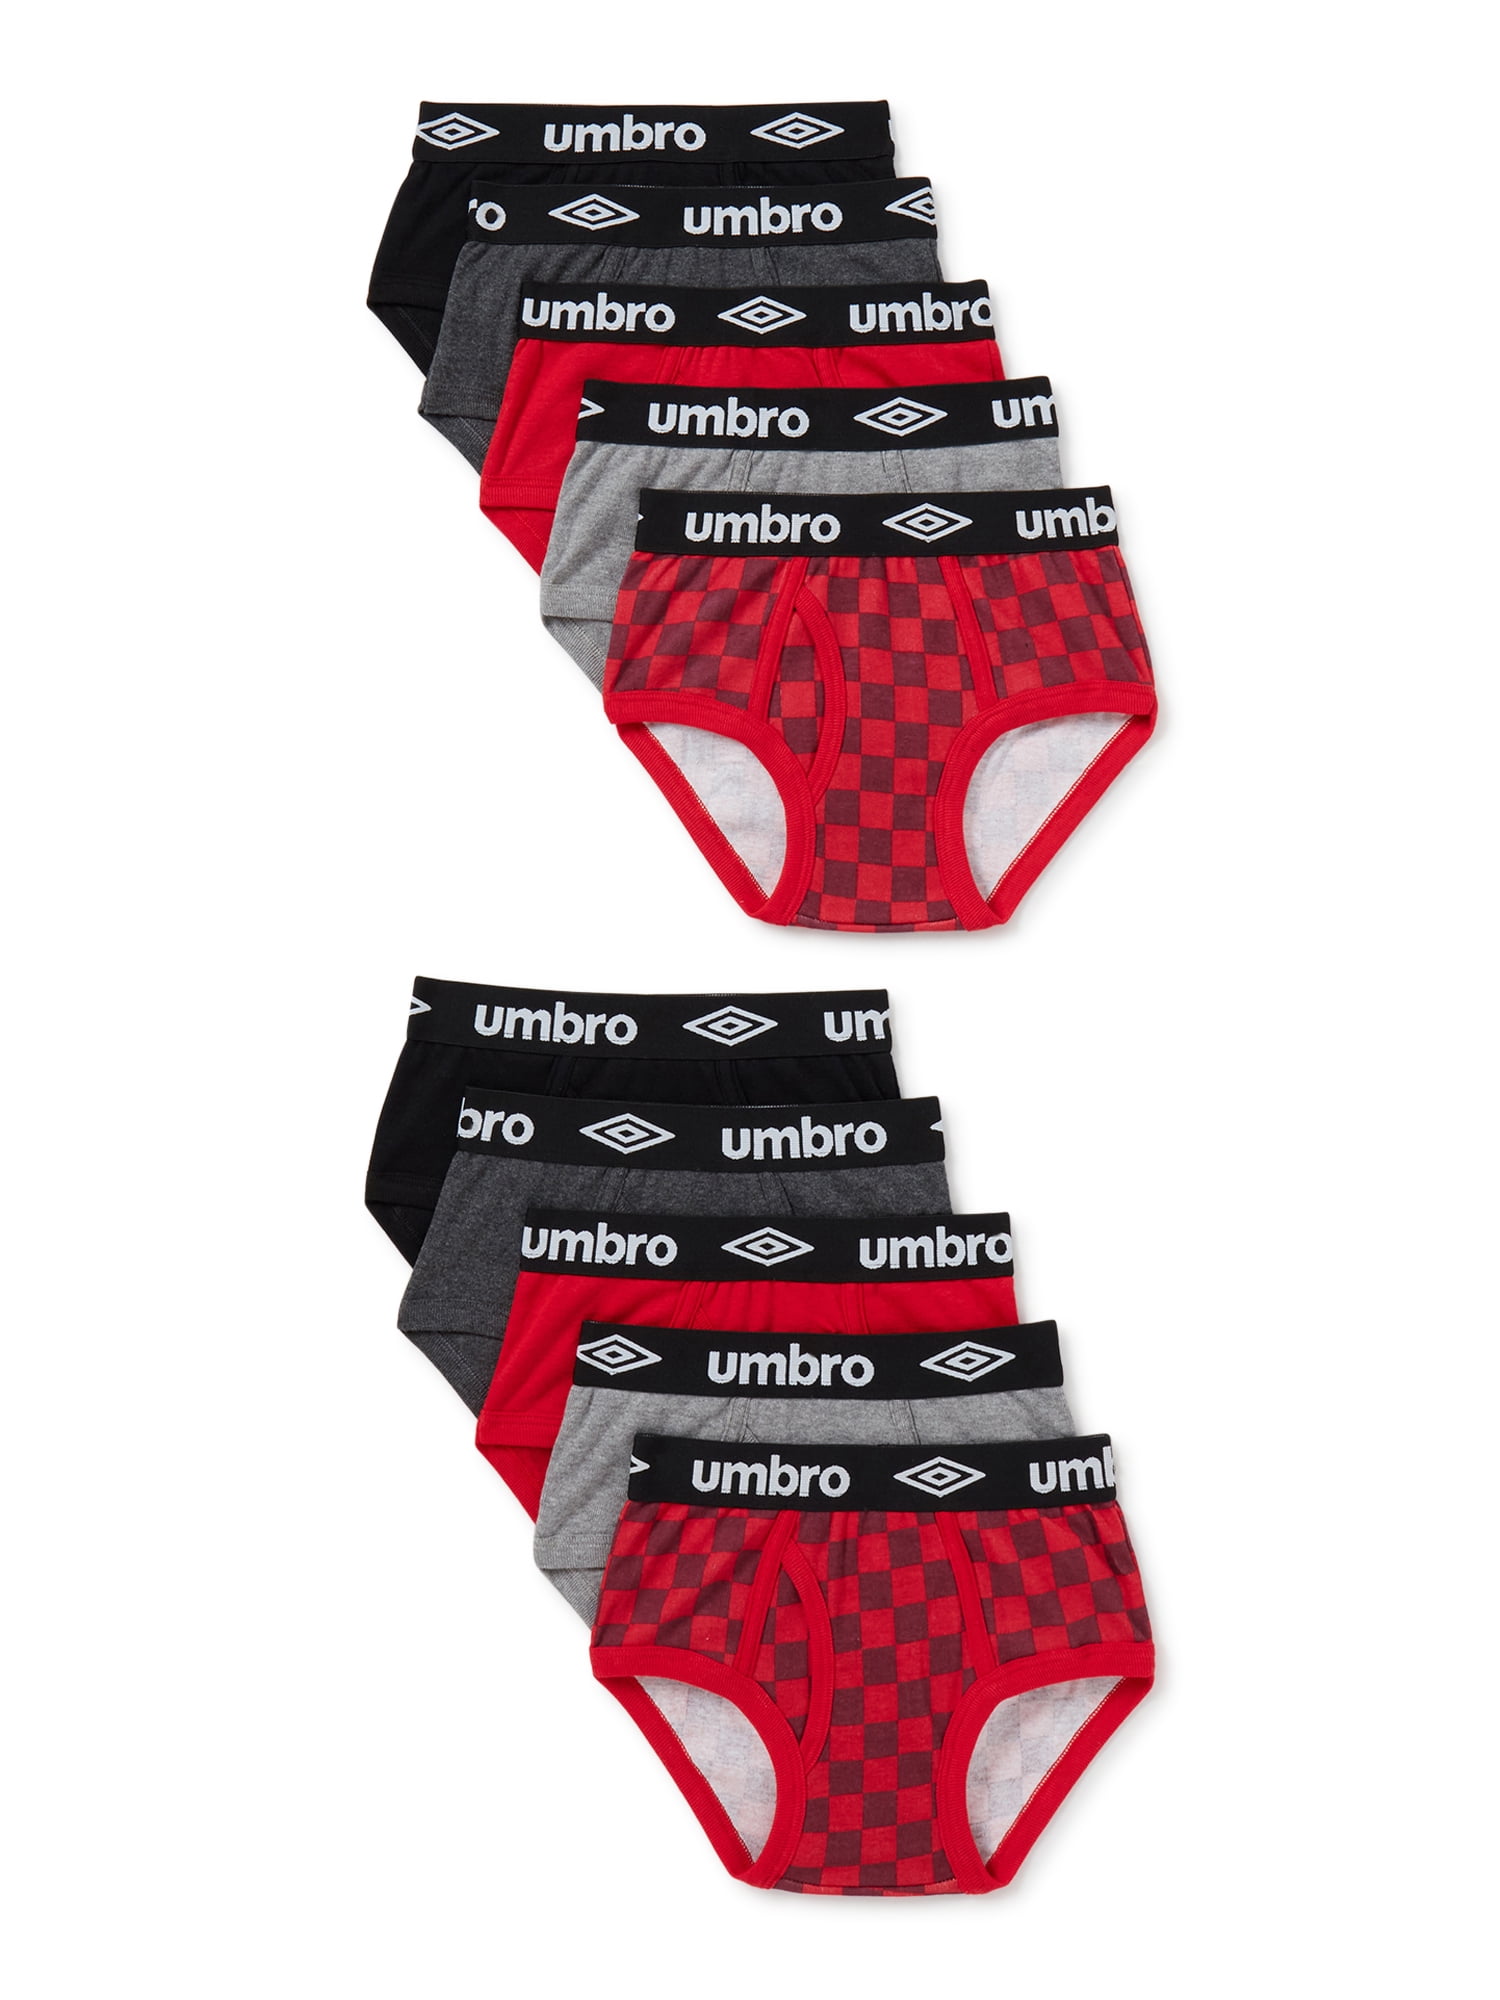 Umbro Boys Underwear, 10 Pack Briefs Sizes 4-18 & Husky 